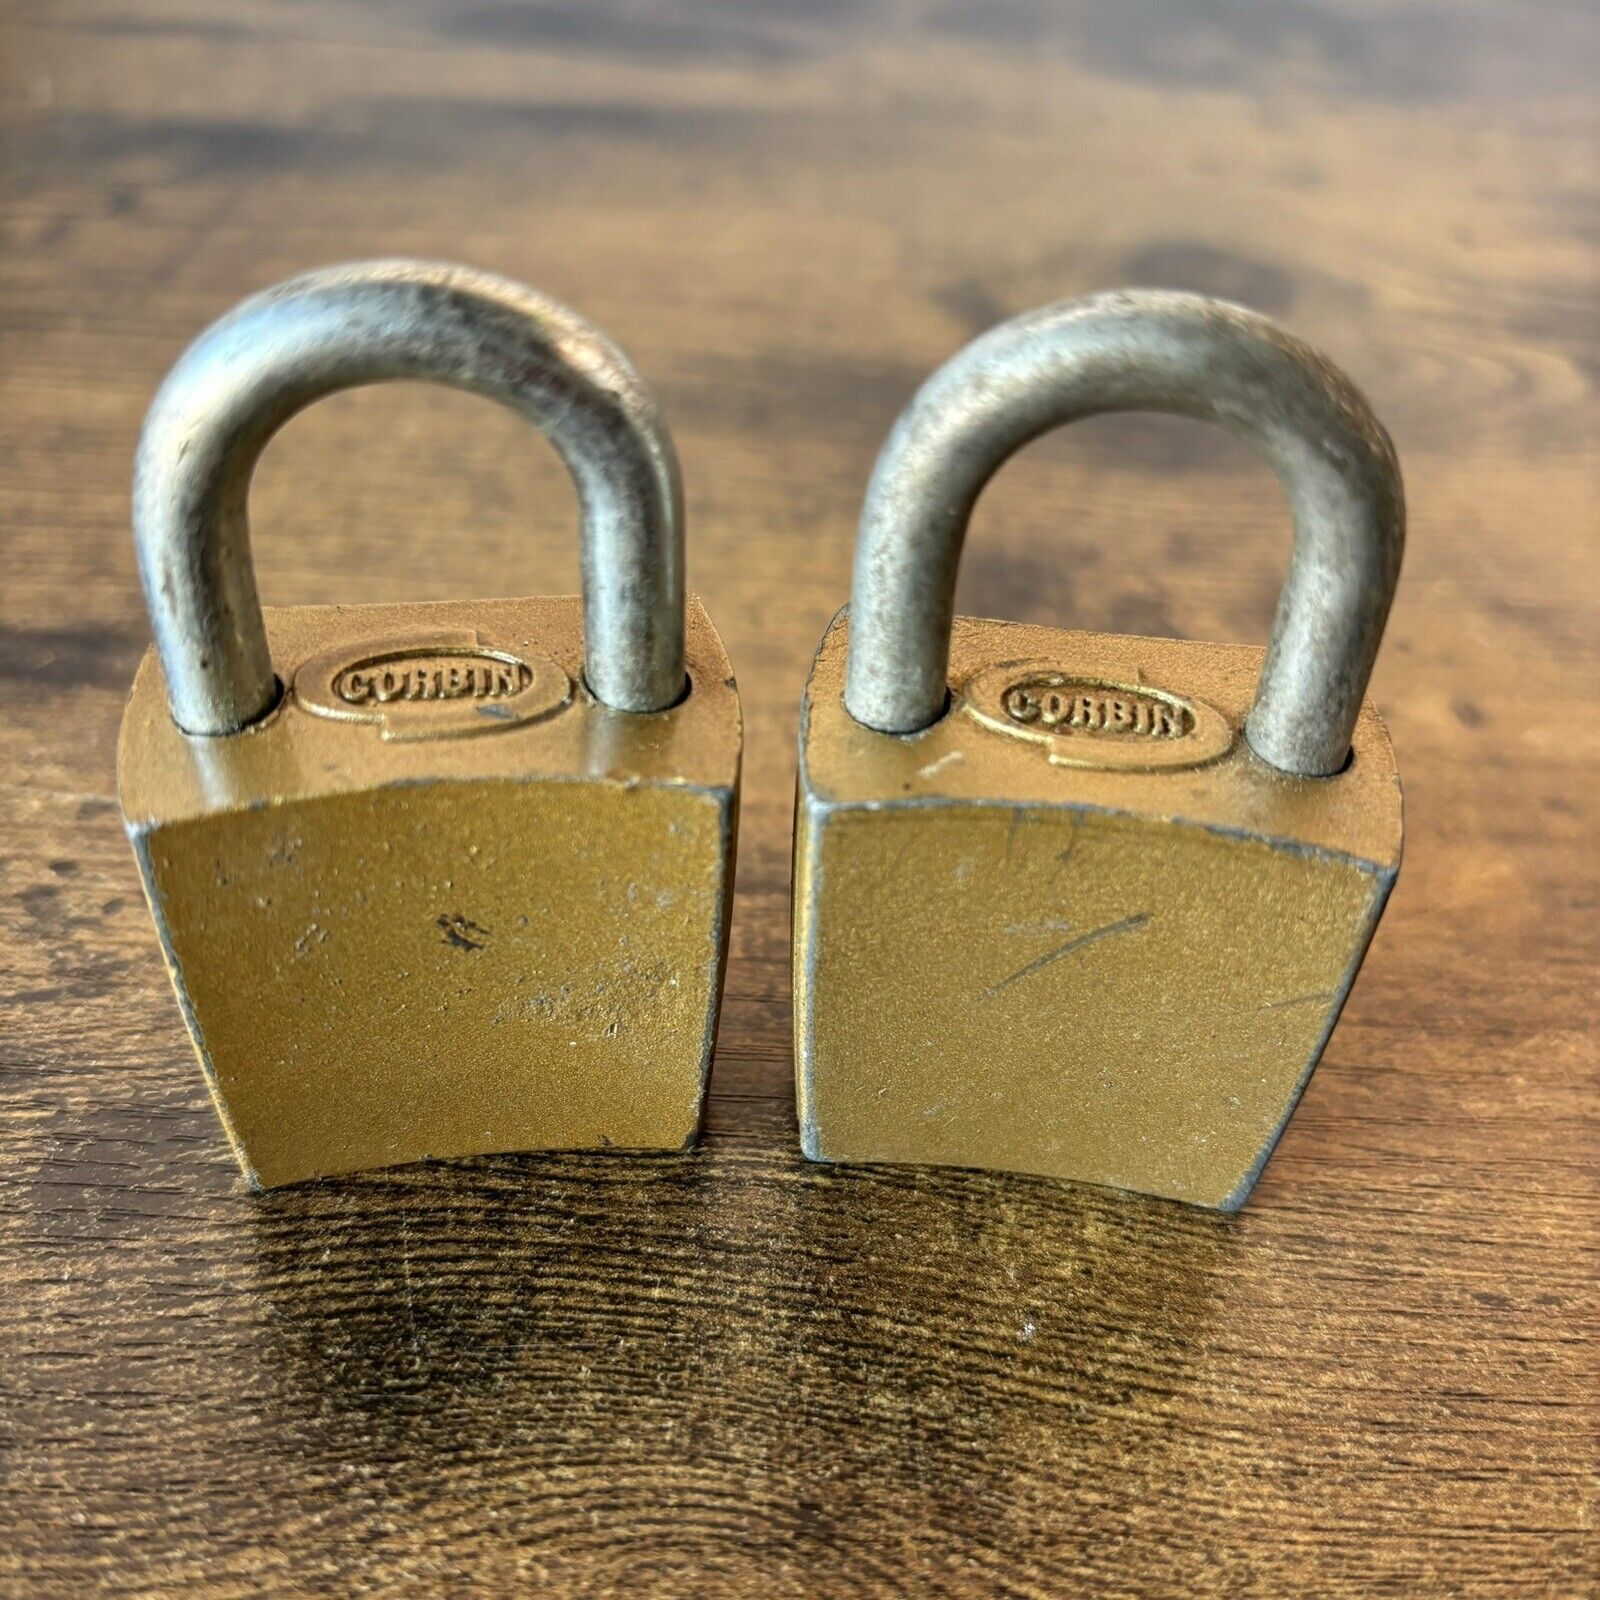 2 Vintage Corbin Solid Brass Padlock Locks - No Keys